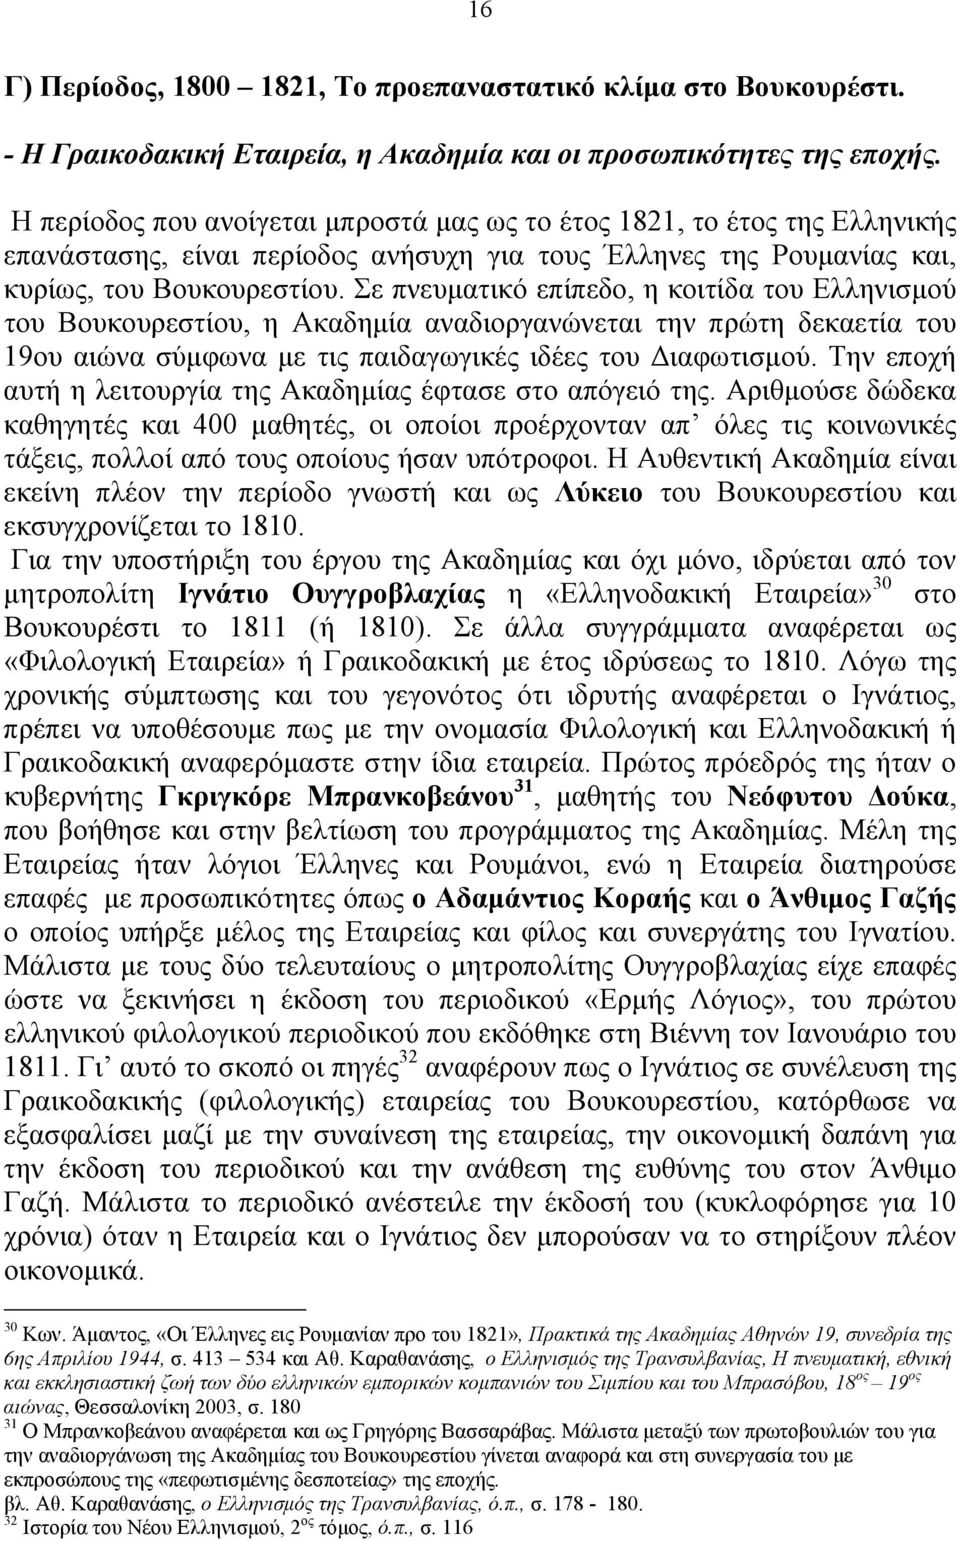 Σε πνευματικό επίπεδο, η κοιτίδα του Ελληνισμού του Βουκουρεστίου, η Ακαδημία αναδιοργανώνεται την πρώτη δεκαετία του 19ου αιώνα σύμφωνα με τις παιδαγωγικές ιδέες του Διαφωτισμού.